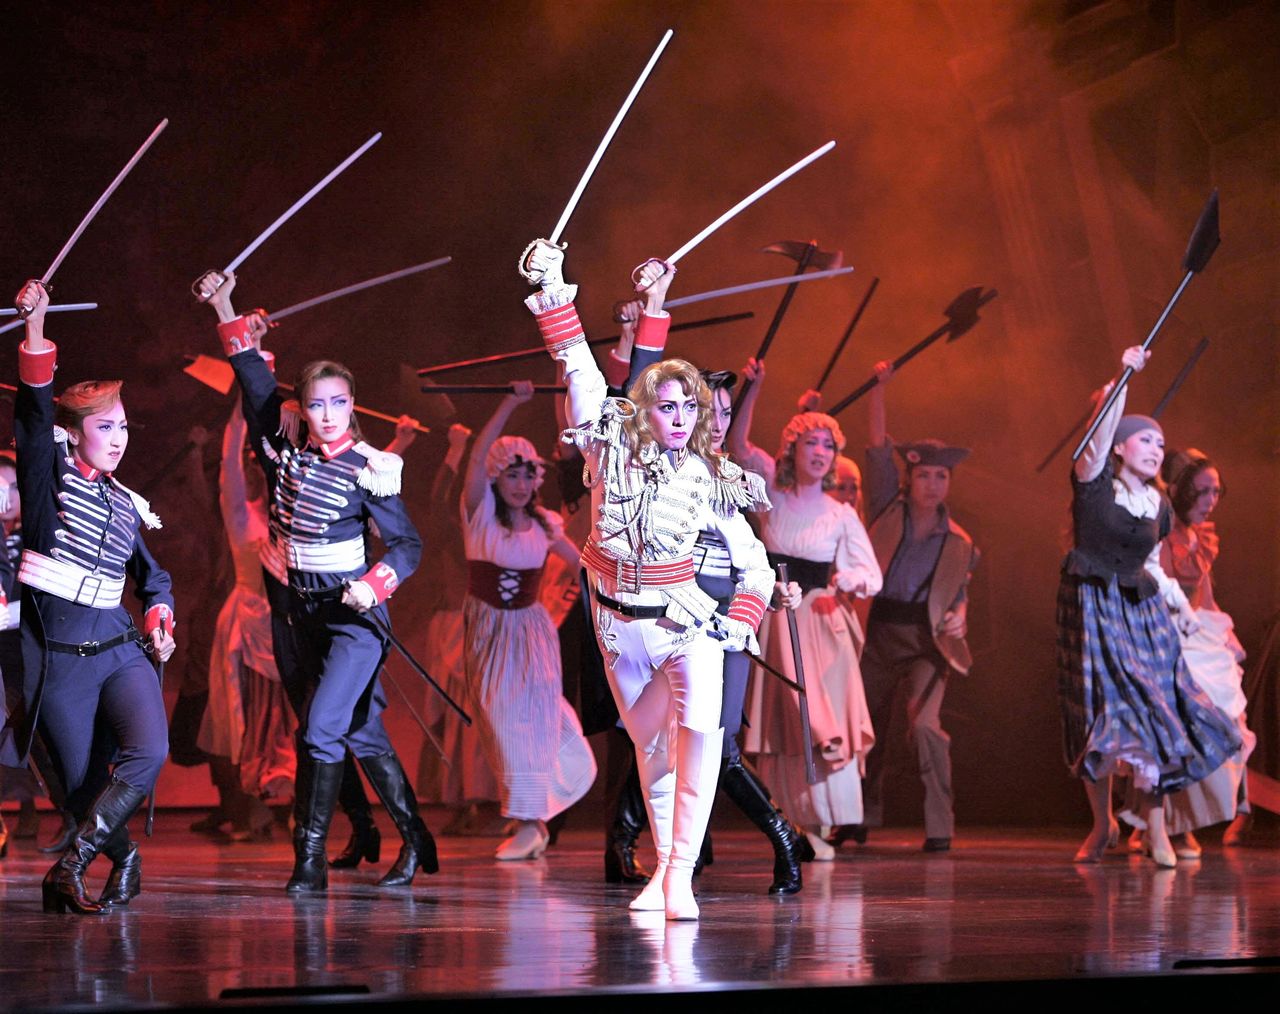 La comédie musicale La Rose de Versailles est restée sans discontinuer à l’affiche de la compagnie théâtrale Takarazuka dès sa première, en 1974, à 2014. Son audience totale a dépassé les cinq millions de spectateurs. (17 février 2006, Théâtre Takarazuka de Tokyo. AFP/Jiji)